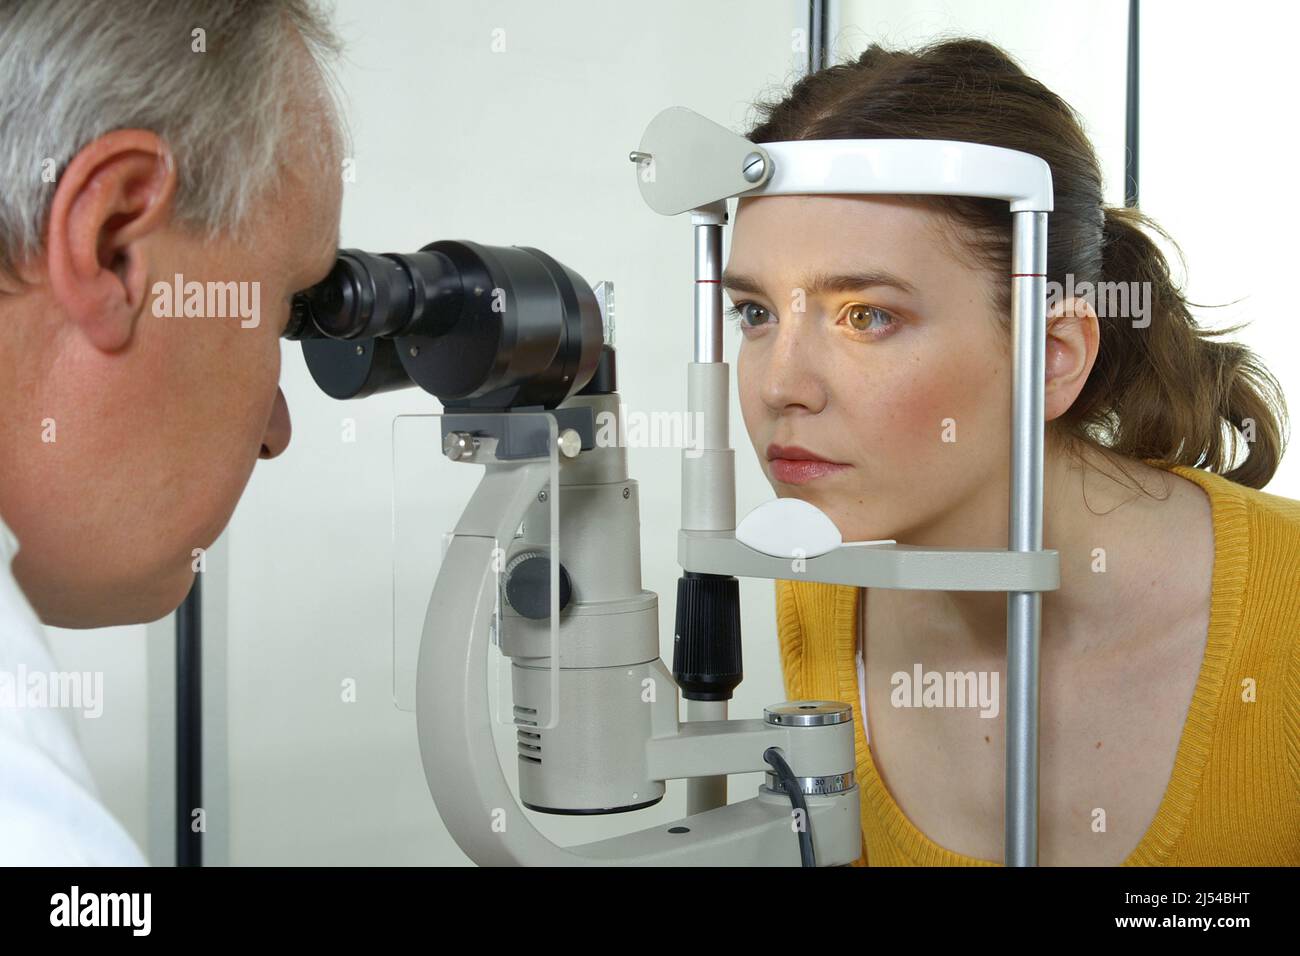 oftalmólogo examinando los ojos de un paciente Foto de stock